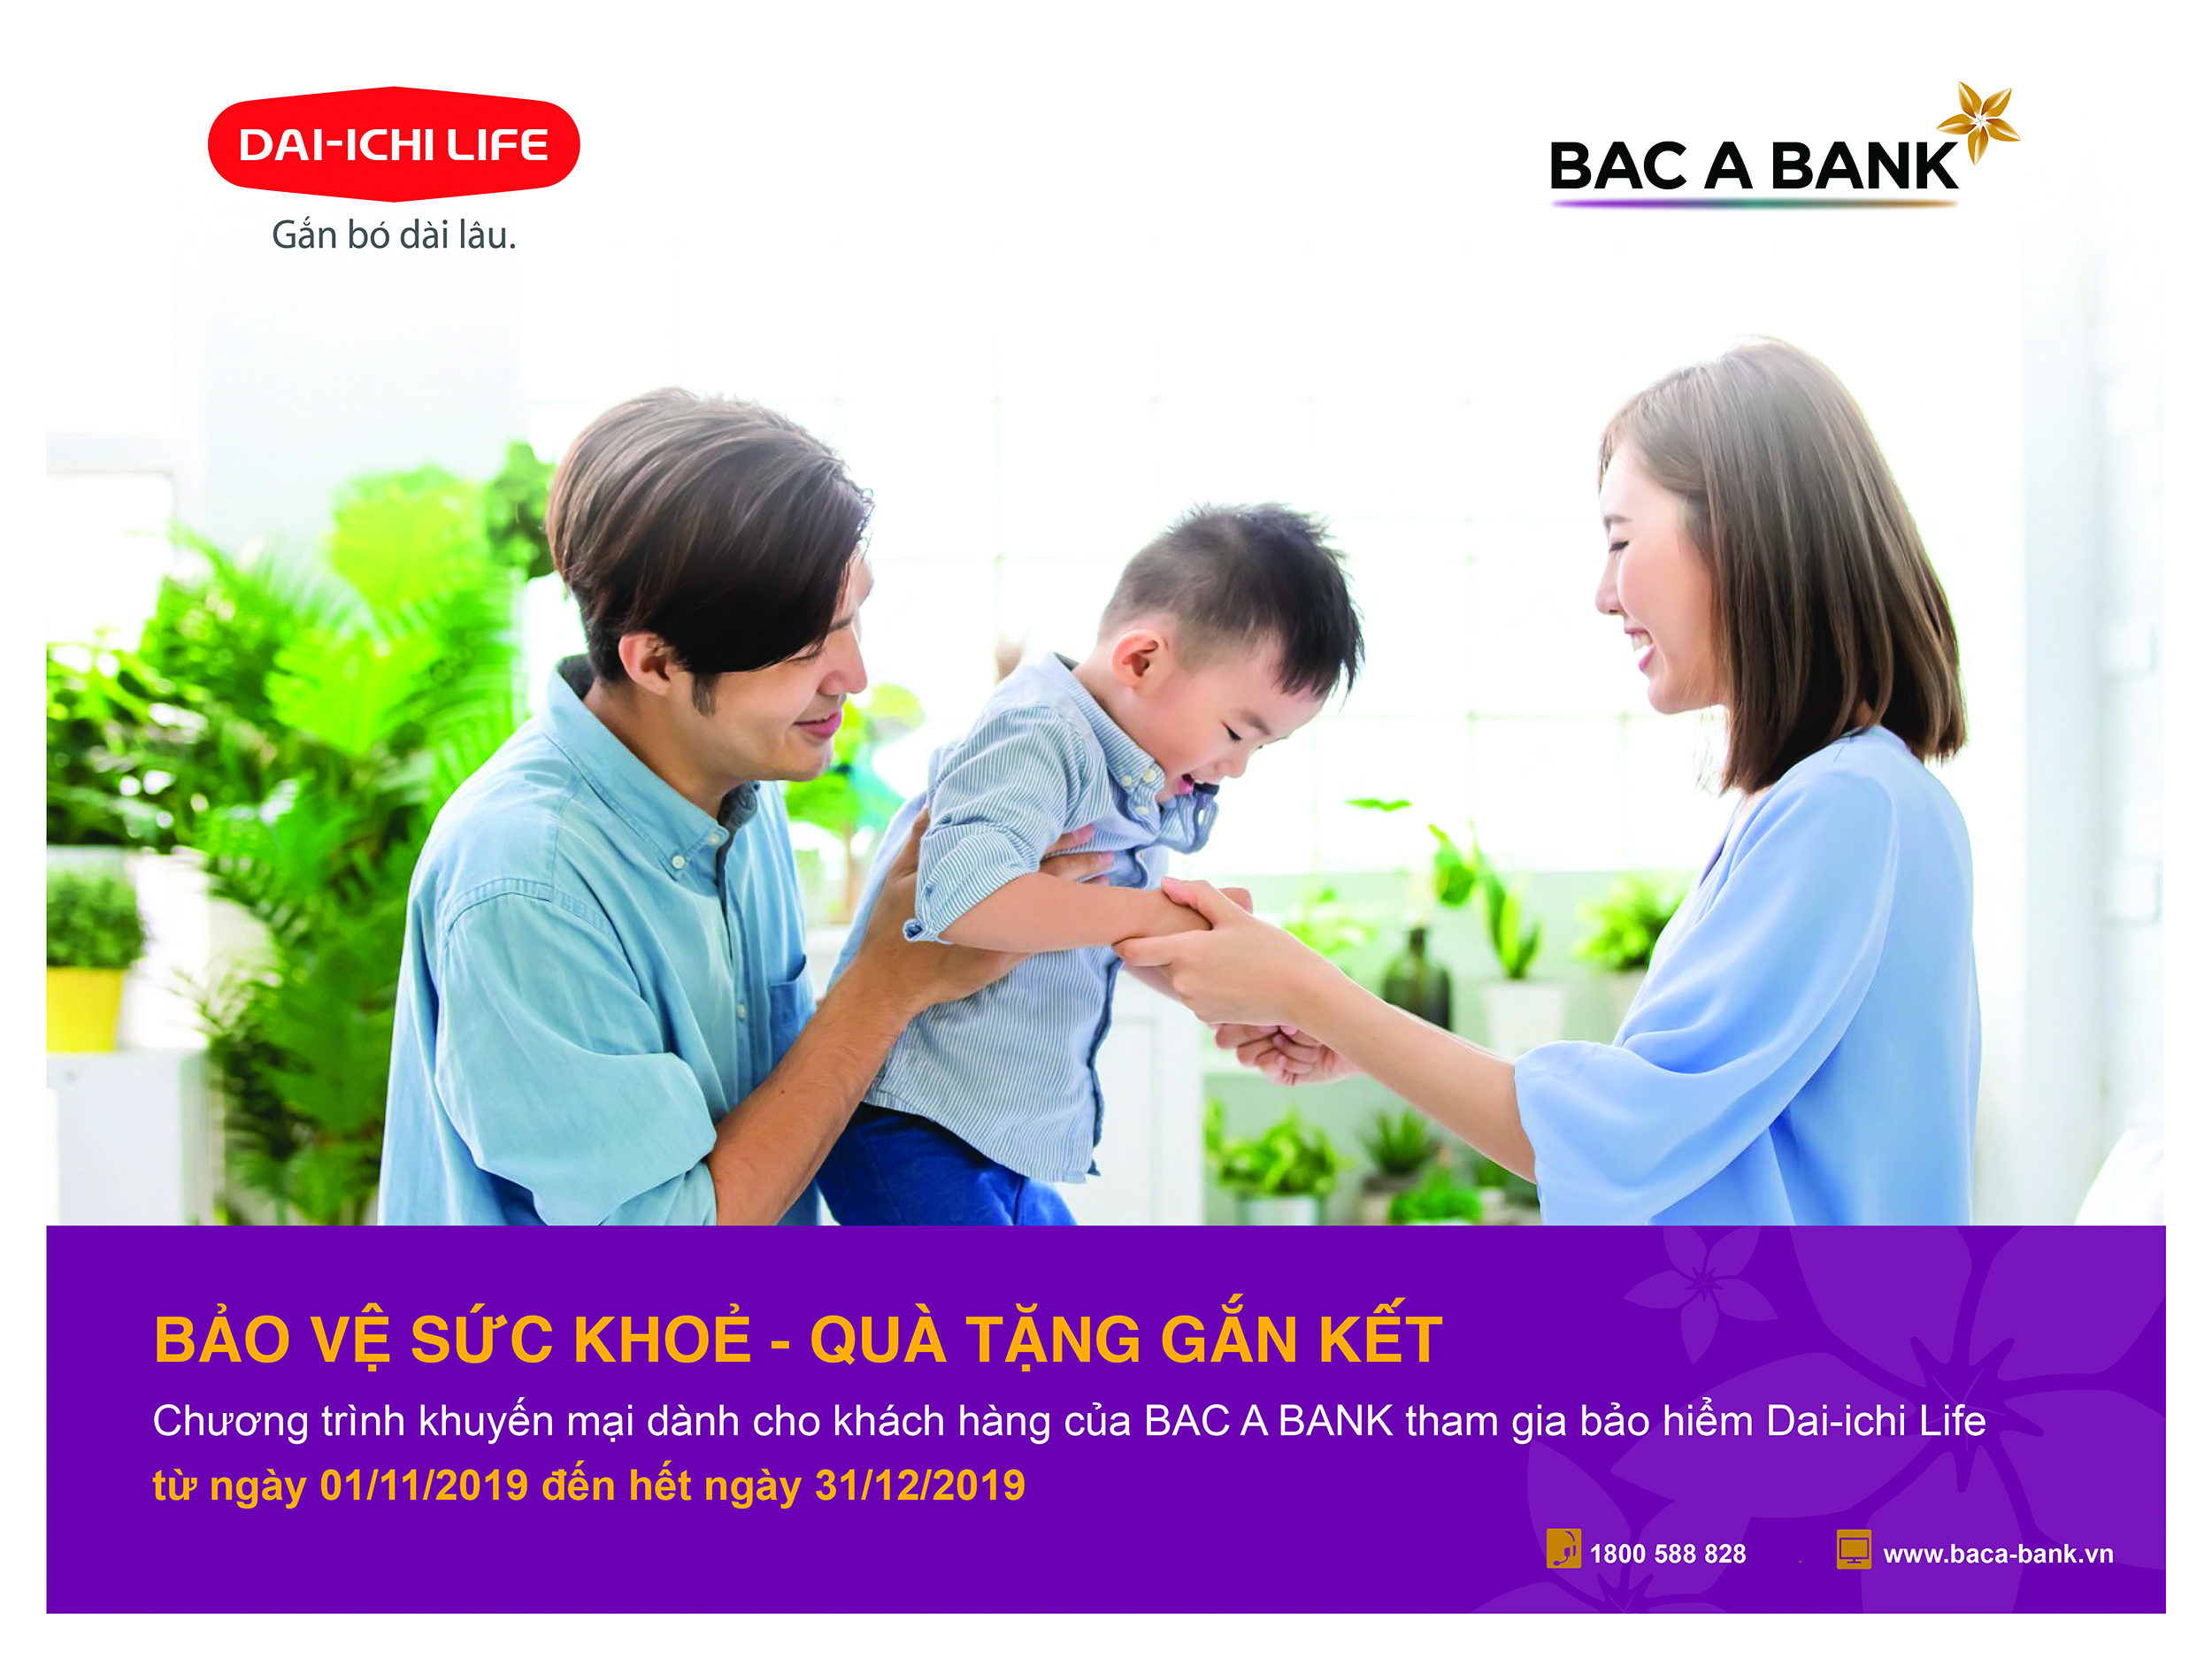 Tham gia bảo hiểm Dai-ichi life, khách hàng của BAC A BANK nhận ngay quà hấp dẫn 1